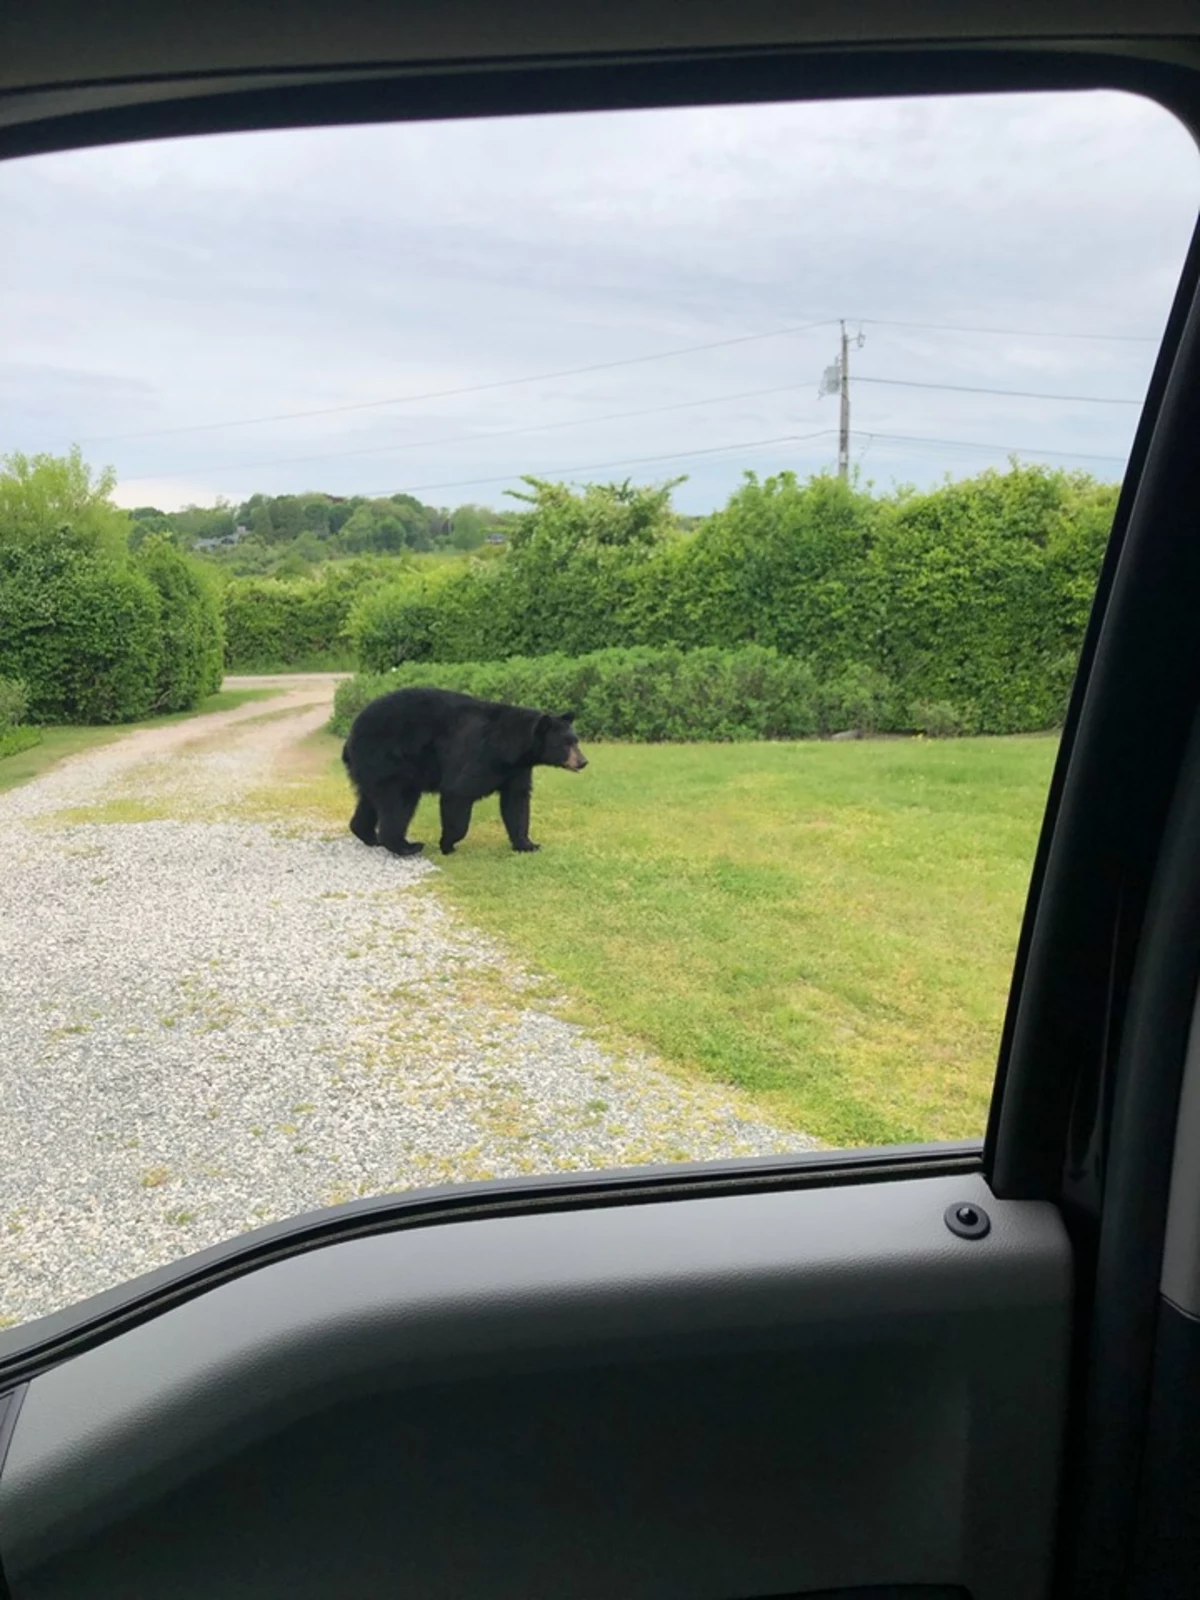 More Bear Sightings in Rhode Island